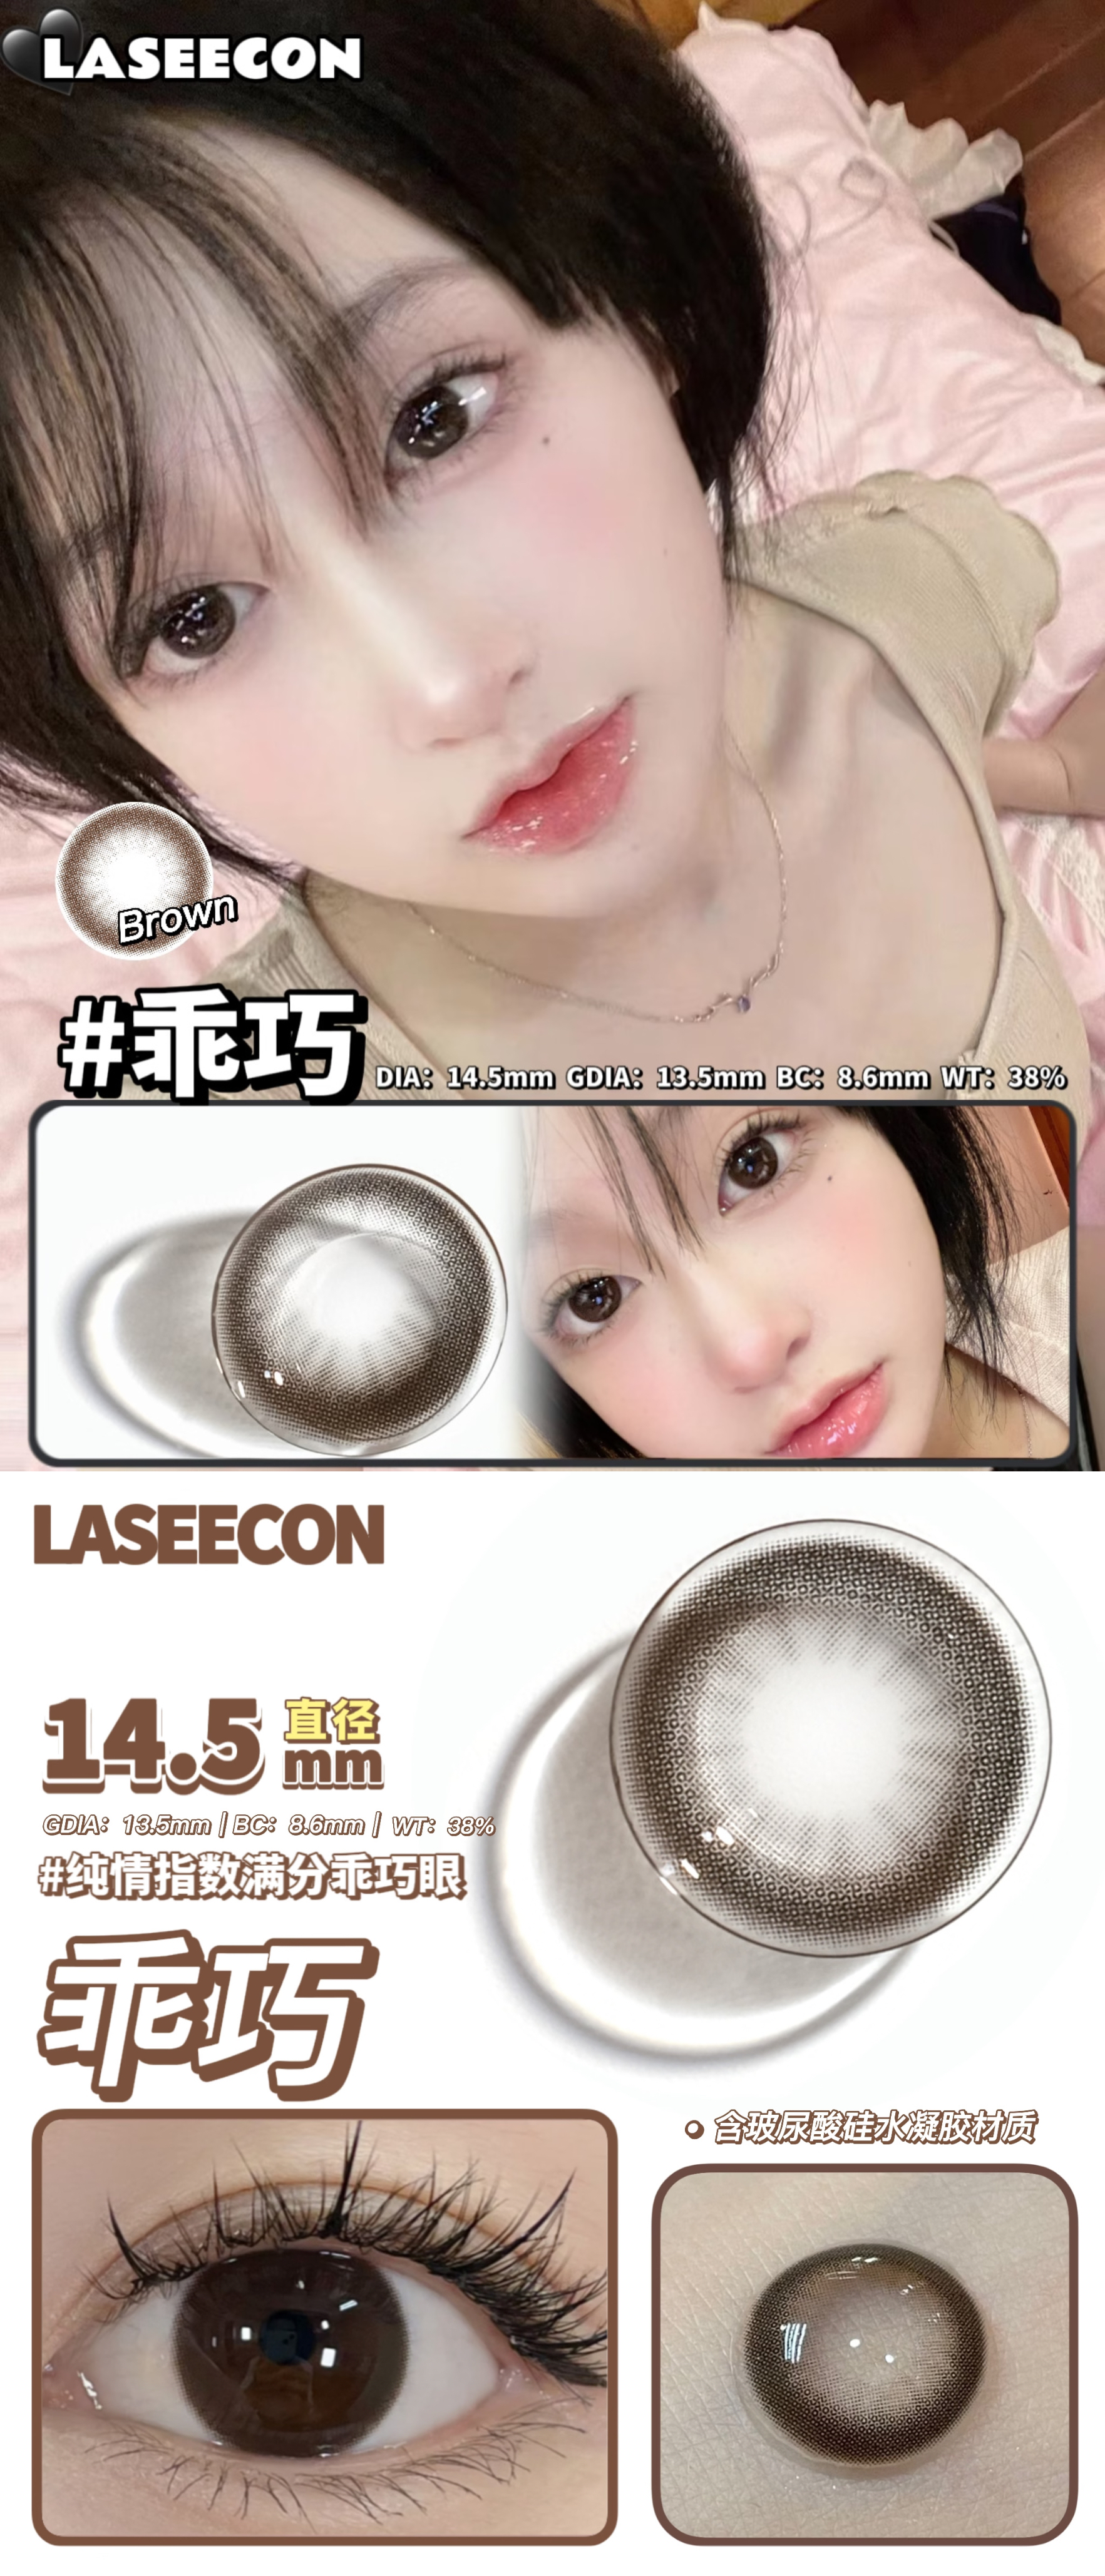 【上新】LASEECON 玻尿酸款上新 赠60ml护理液 - VVCON美瞳网